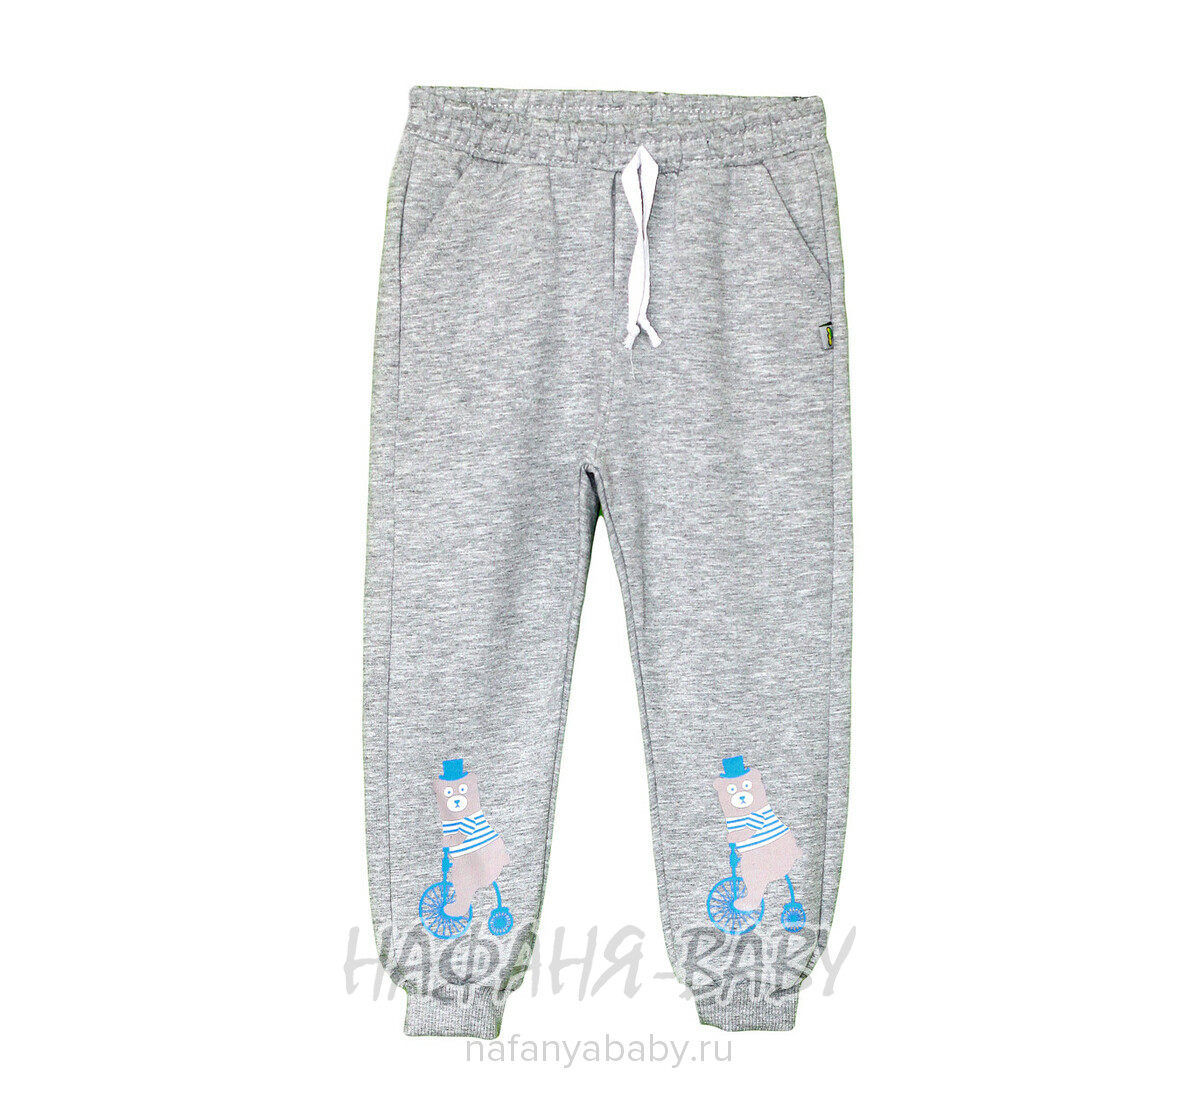 Детские брюки для мальчика MISIL, купить в интернет магазине Нафаня. арт: 0381.